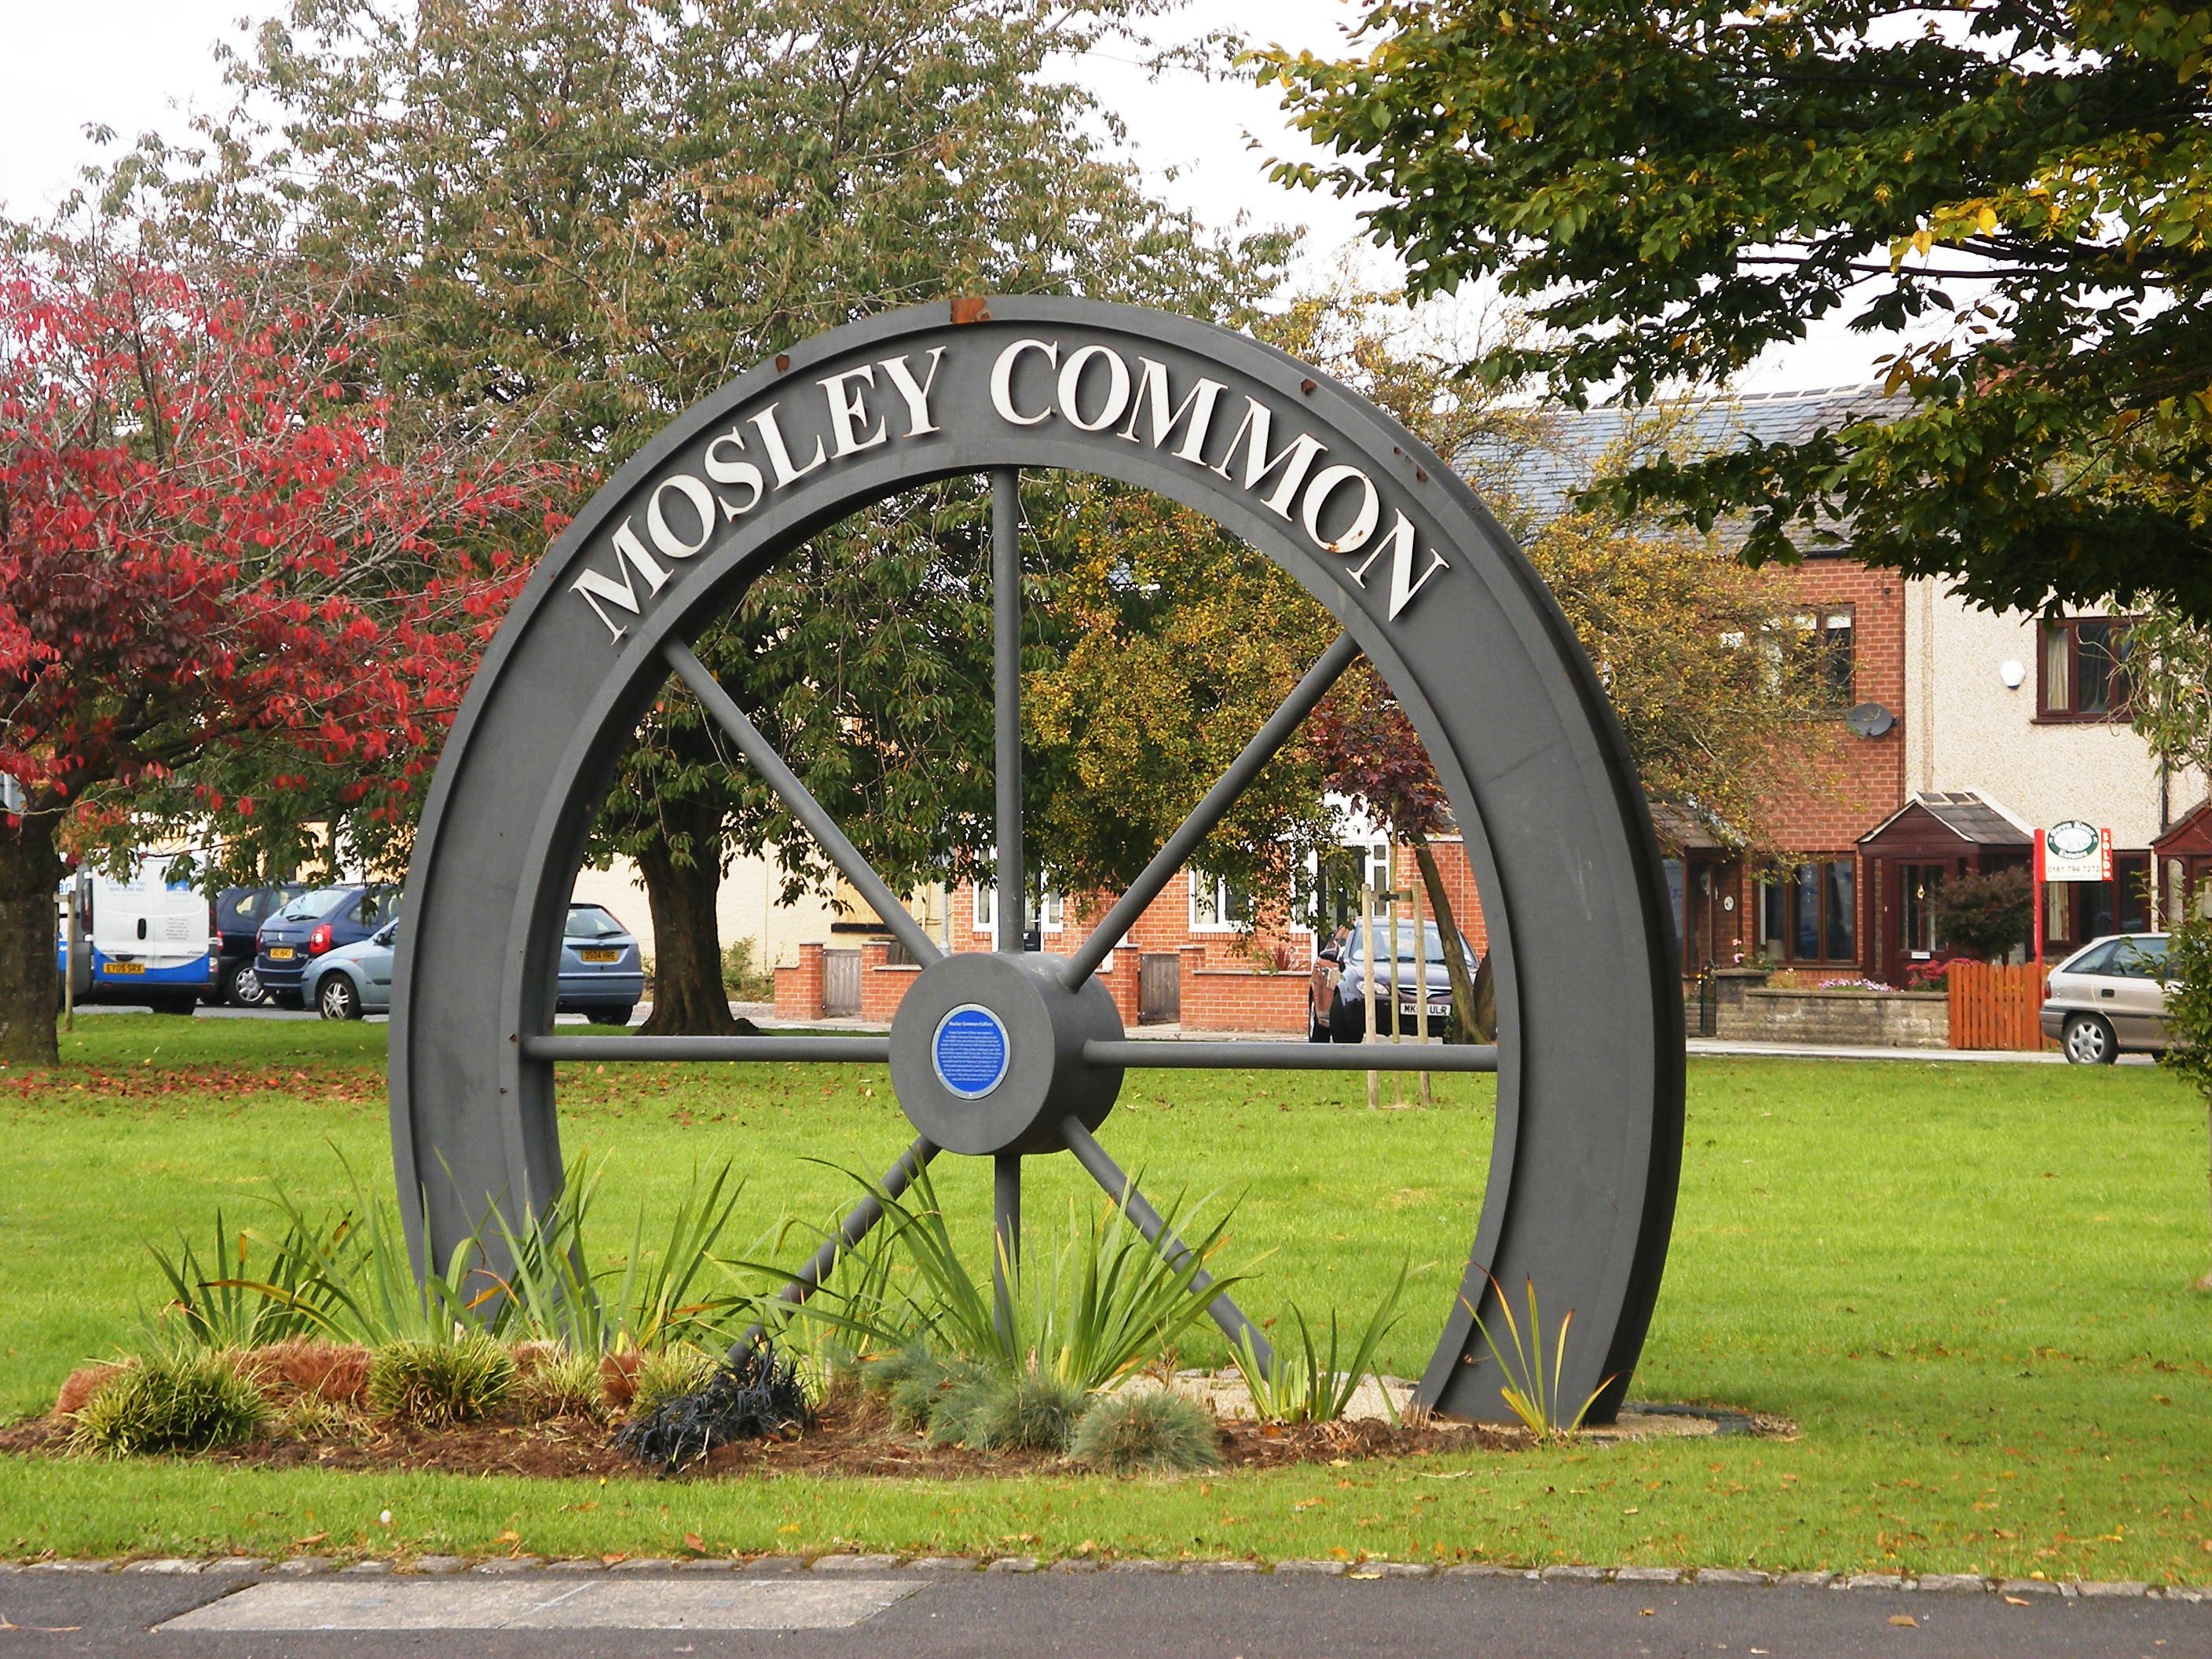 Mosley Common